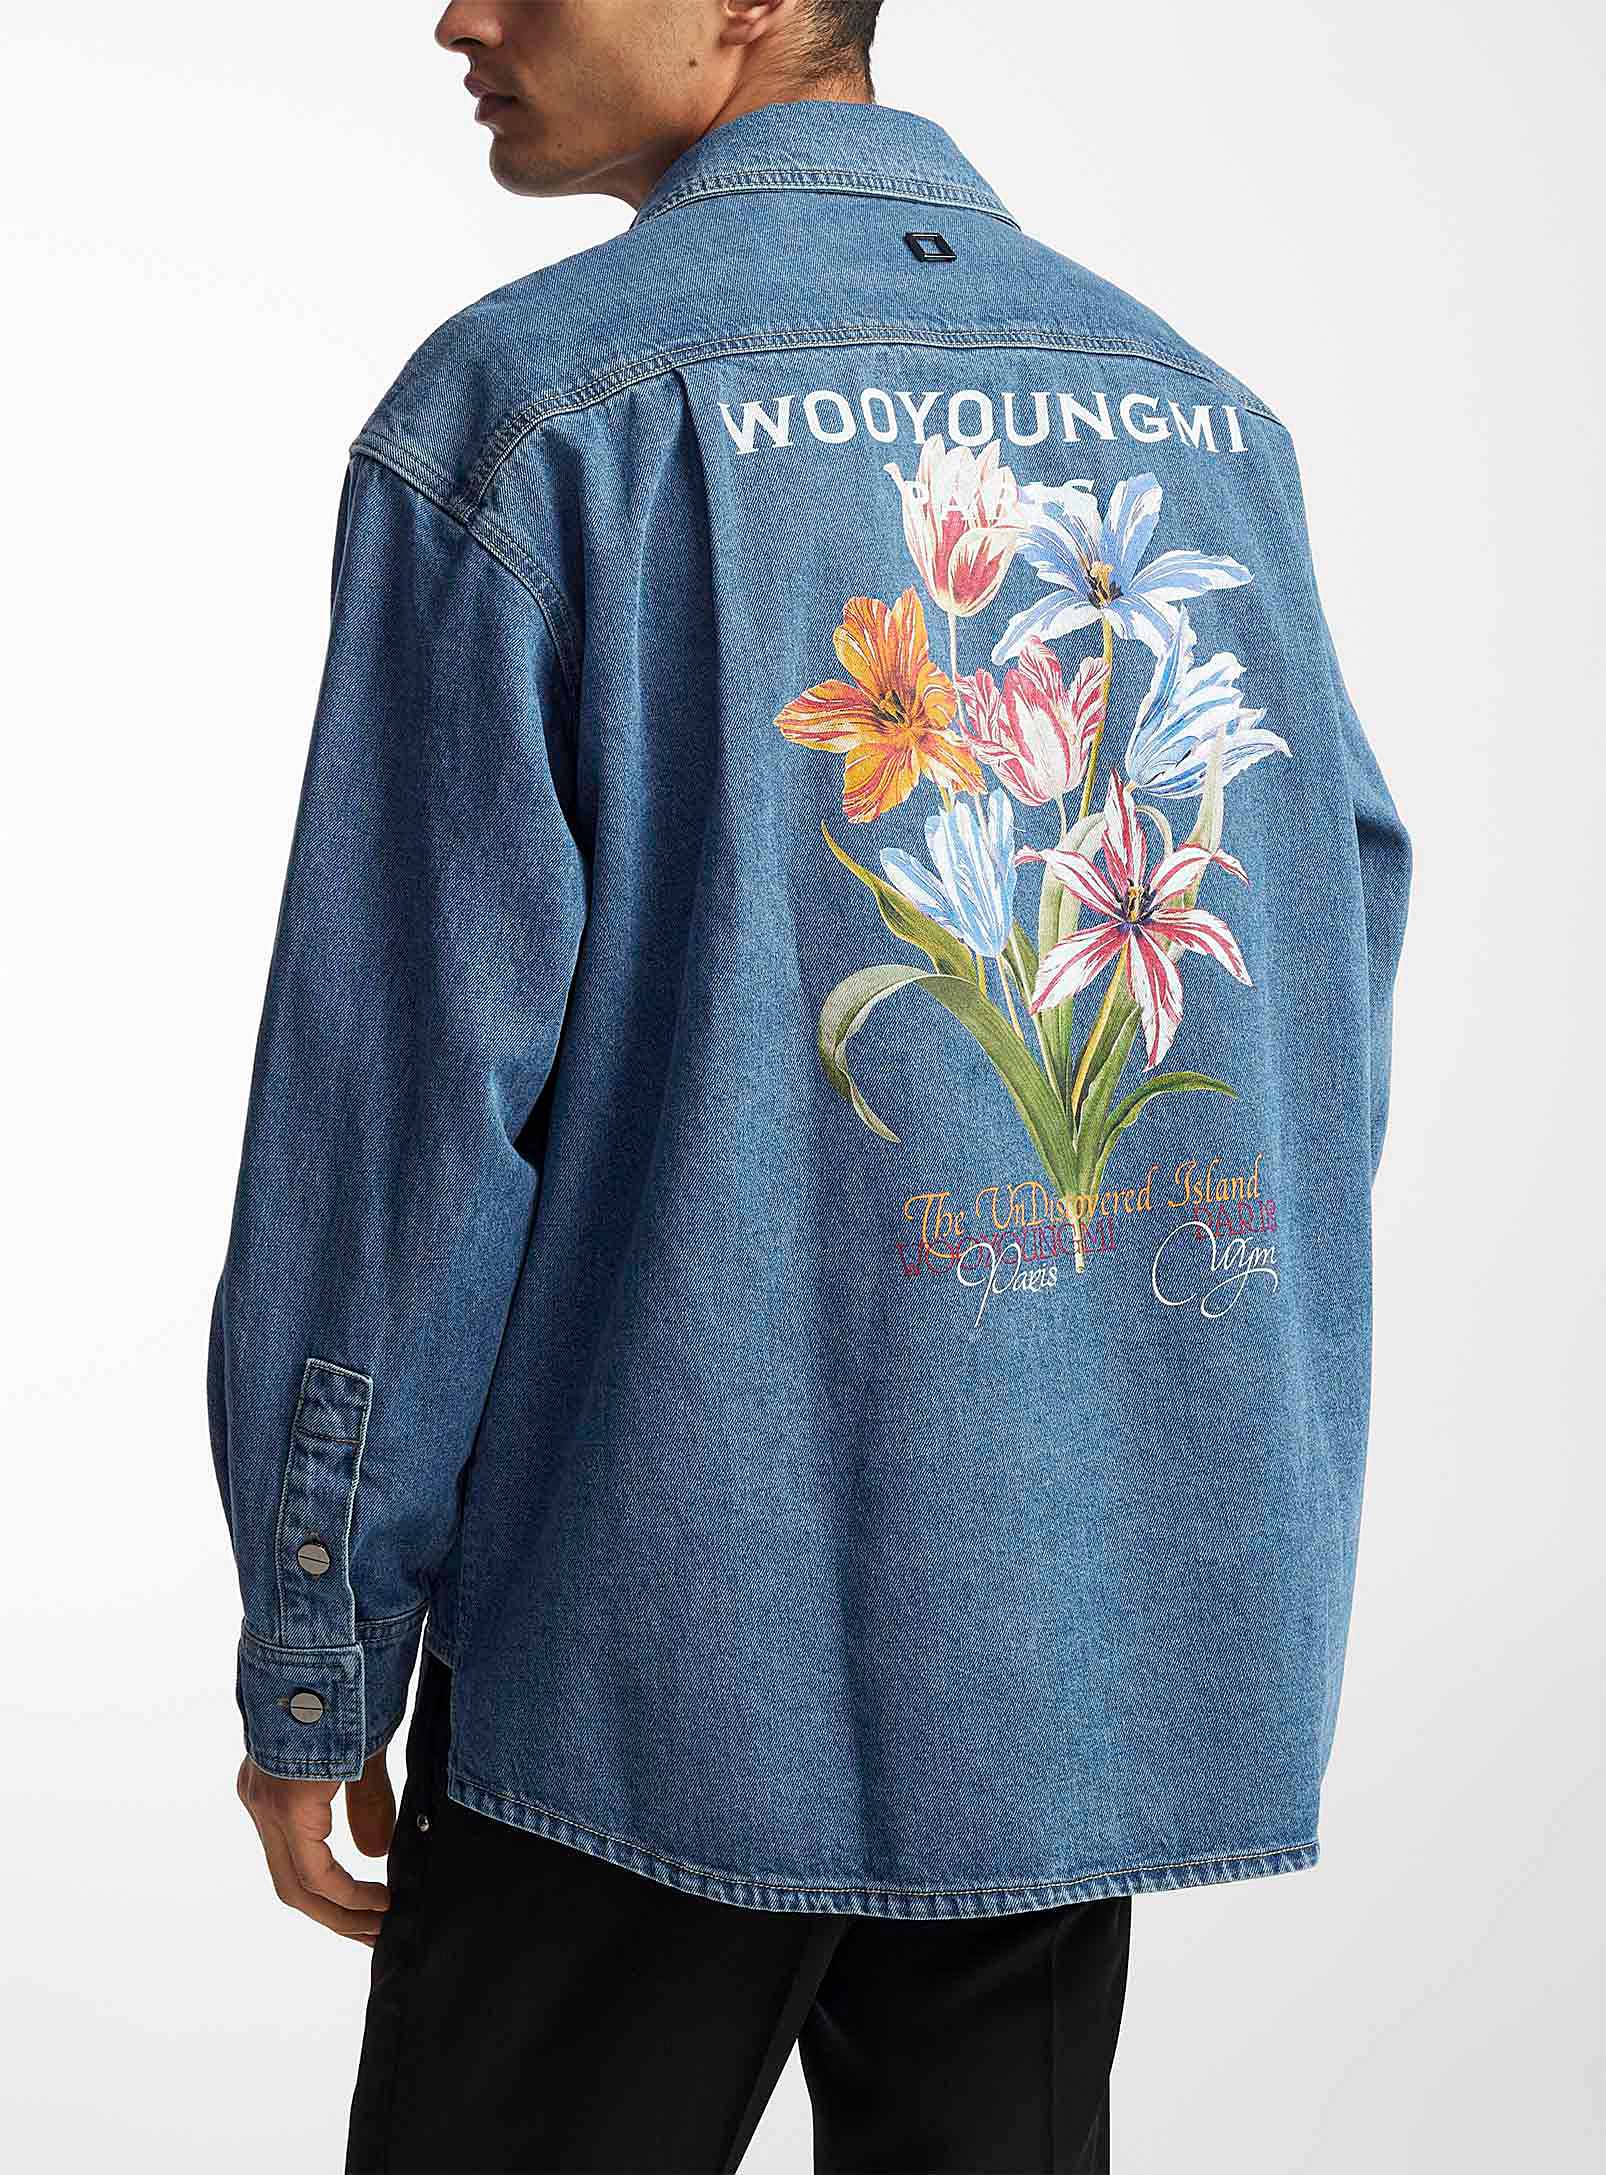 Wooyoungmi - Men's Floral denim shirt